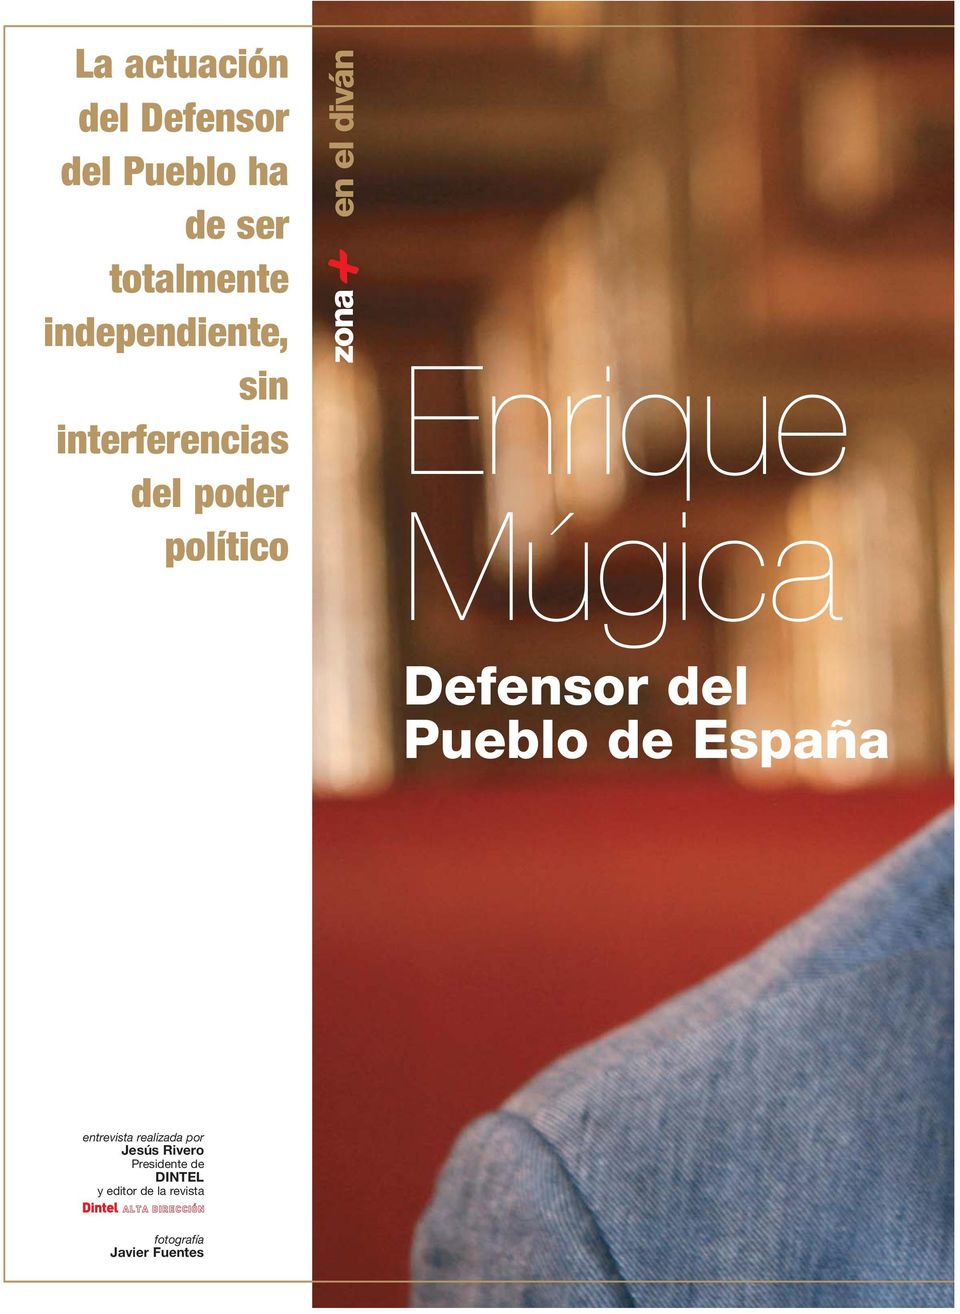 Enrique Múgica Defensor del Pueblo de España entrevista realizada por